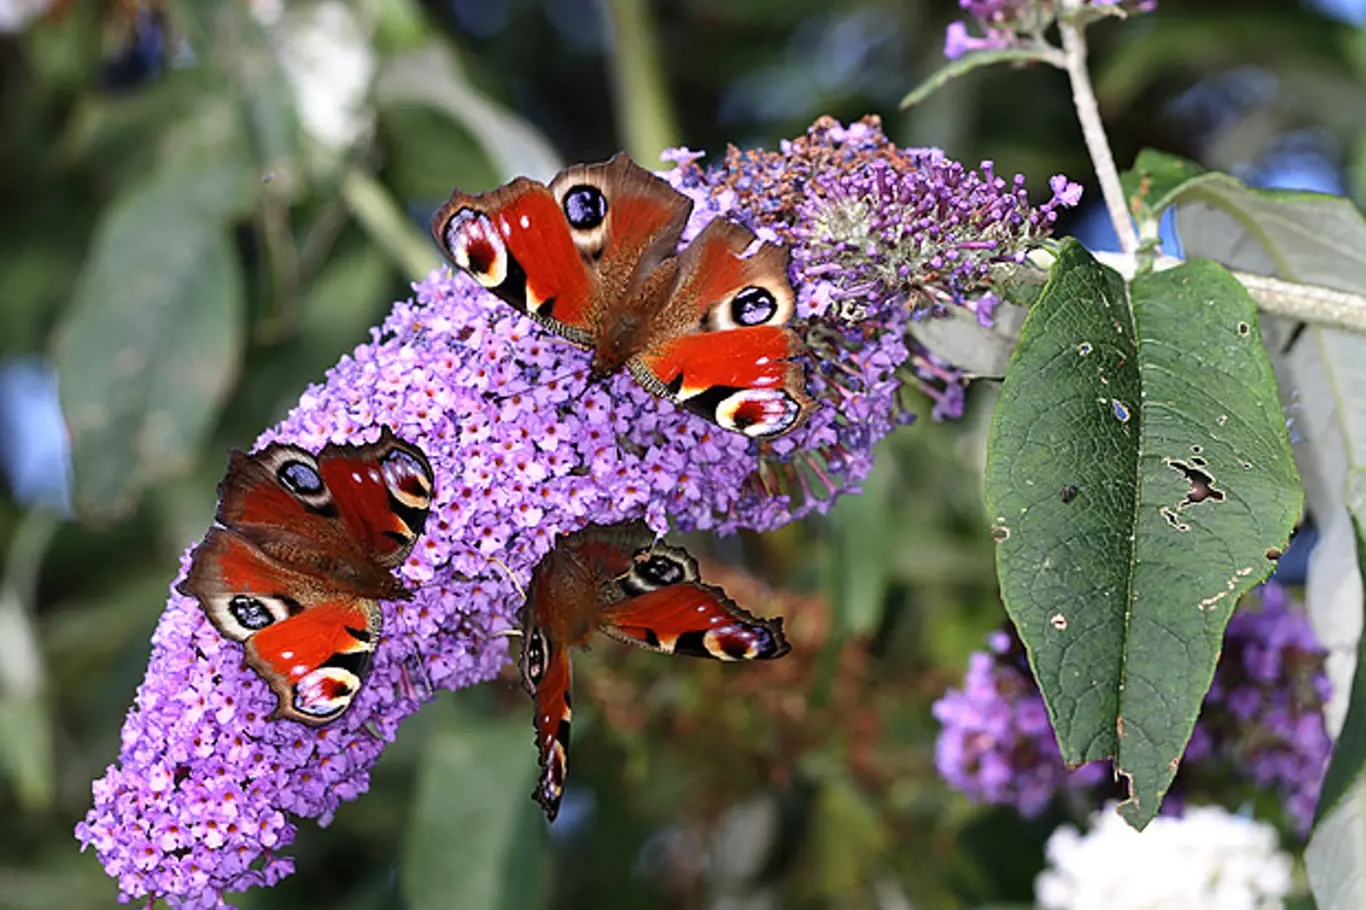 komule zvaná motýlí keř přiláká na zahradu motýly